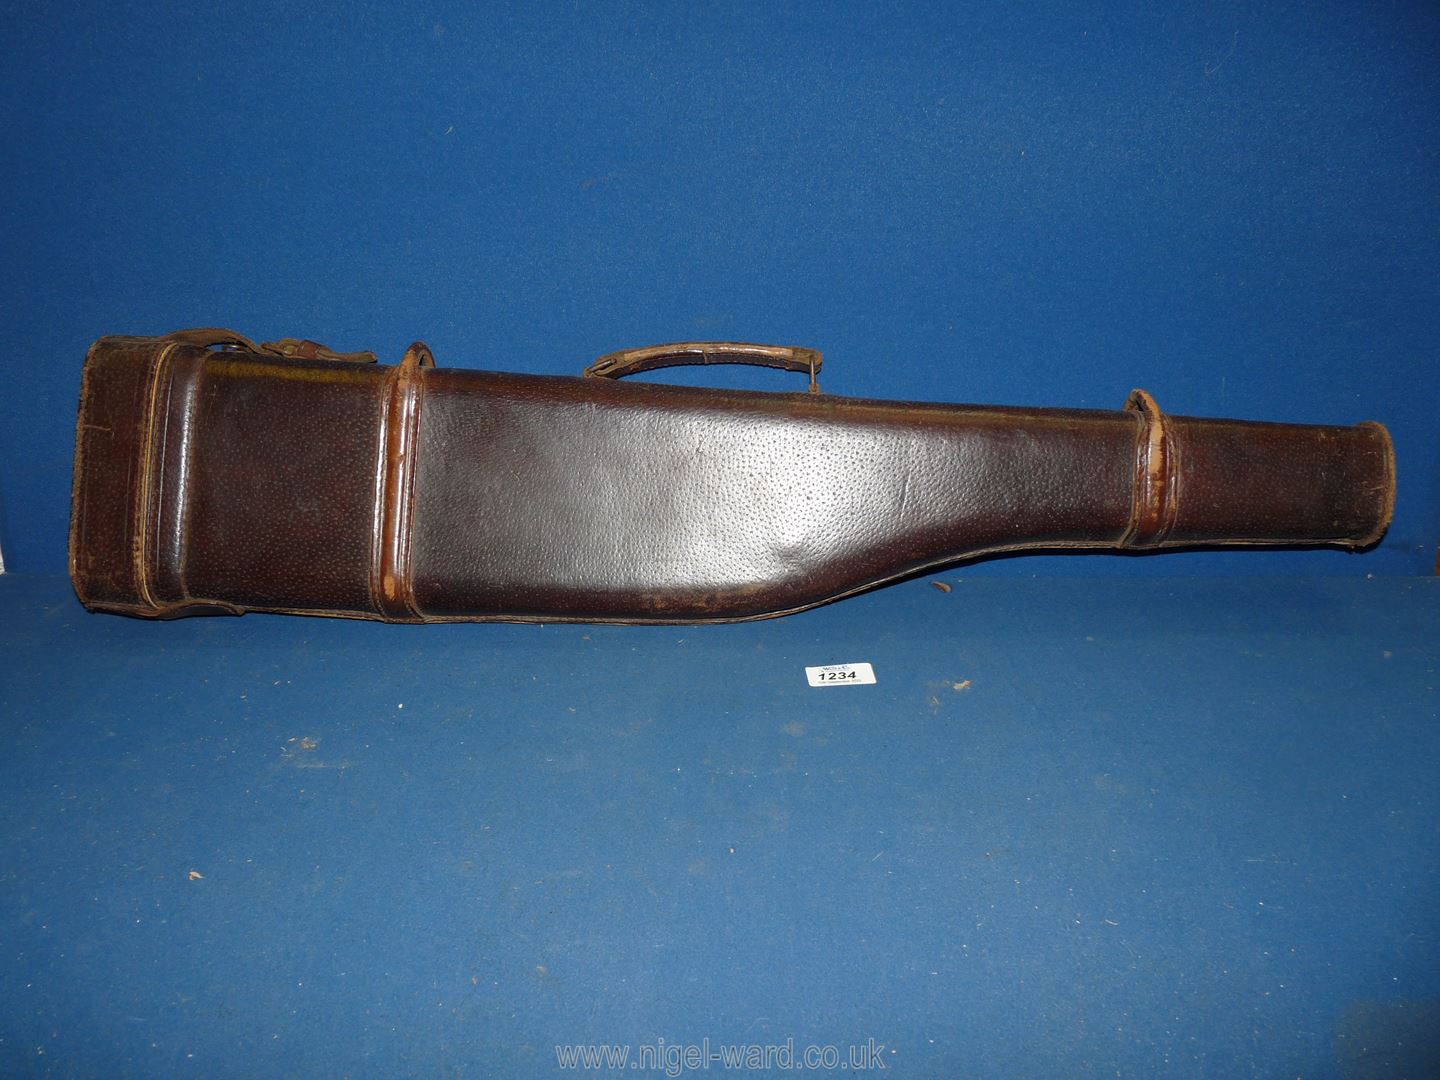 A leg of mutton gun case.